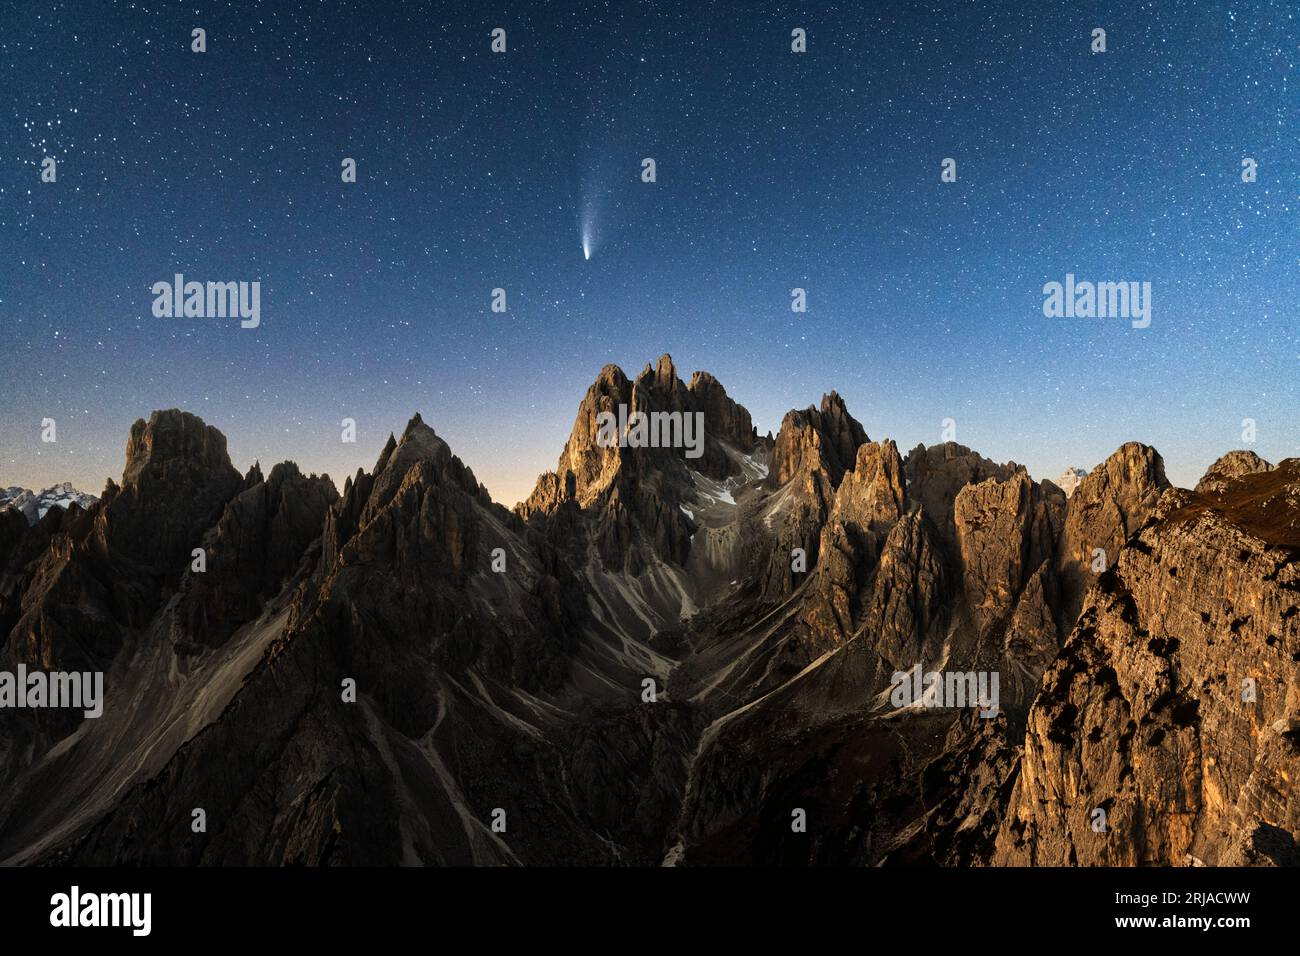 Gruppo montuoso delle Marmarole con Cimon del Froppa sullo sfondo dell'incredibile cielo stellato, Dolomiti, Italia. Fotografia di paesaggi Foto Stock